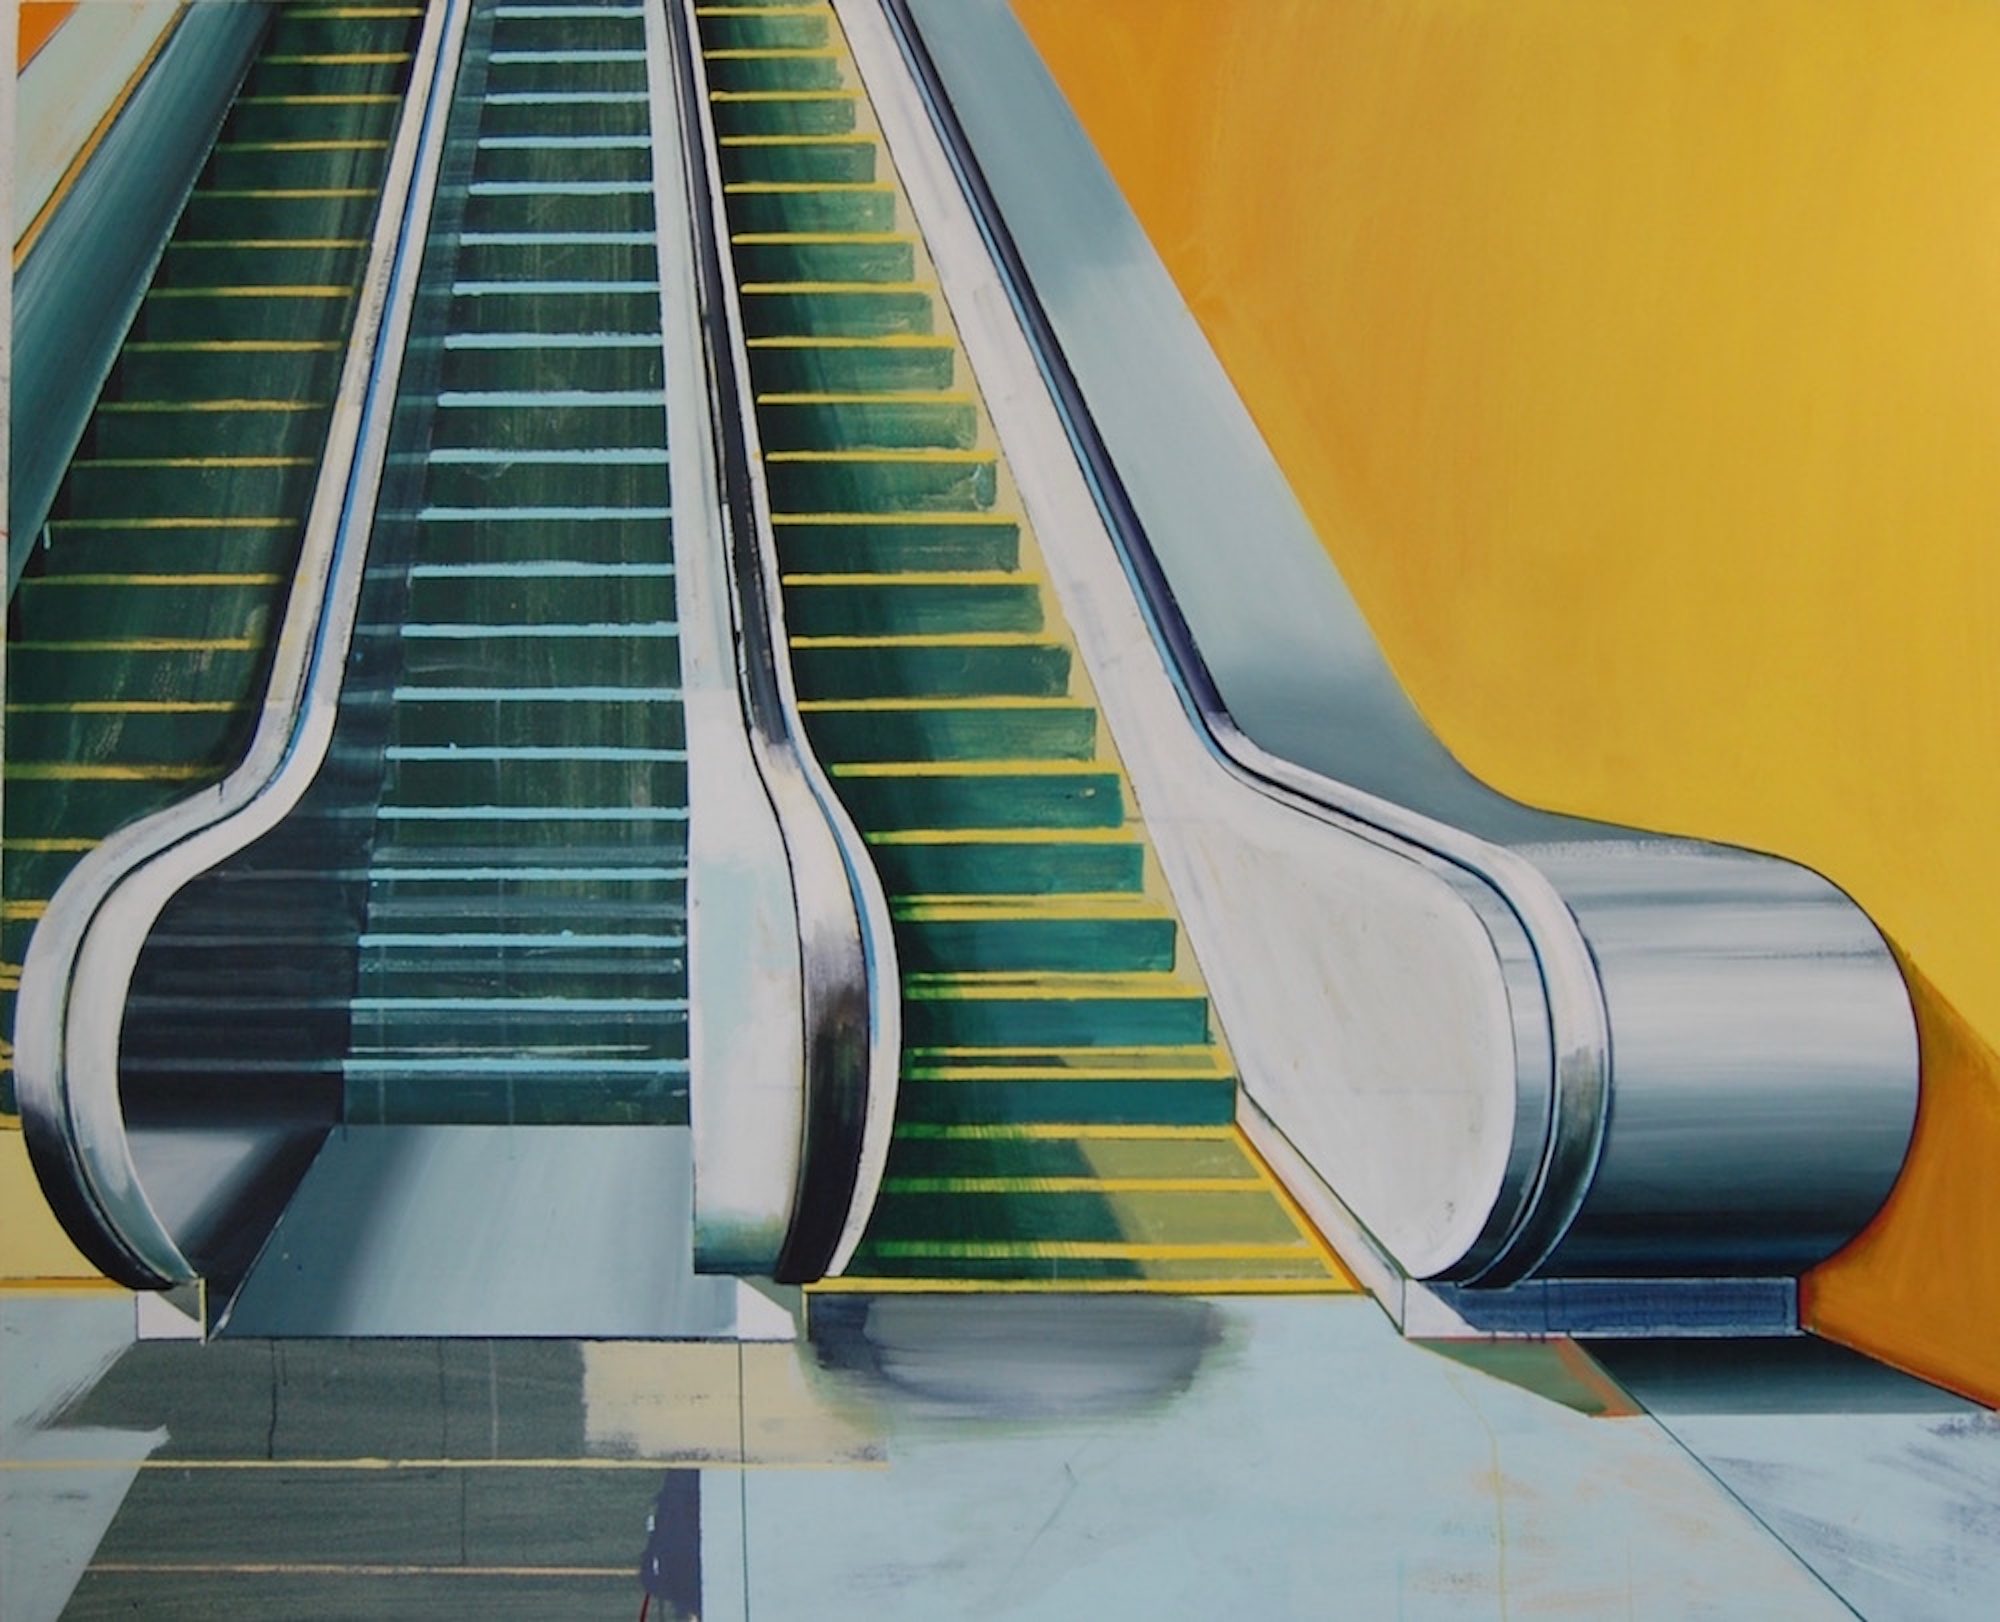 'Escalator' Paul Crook Acrylic on canvas, 135cm x 165cm